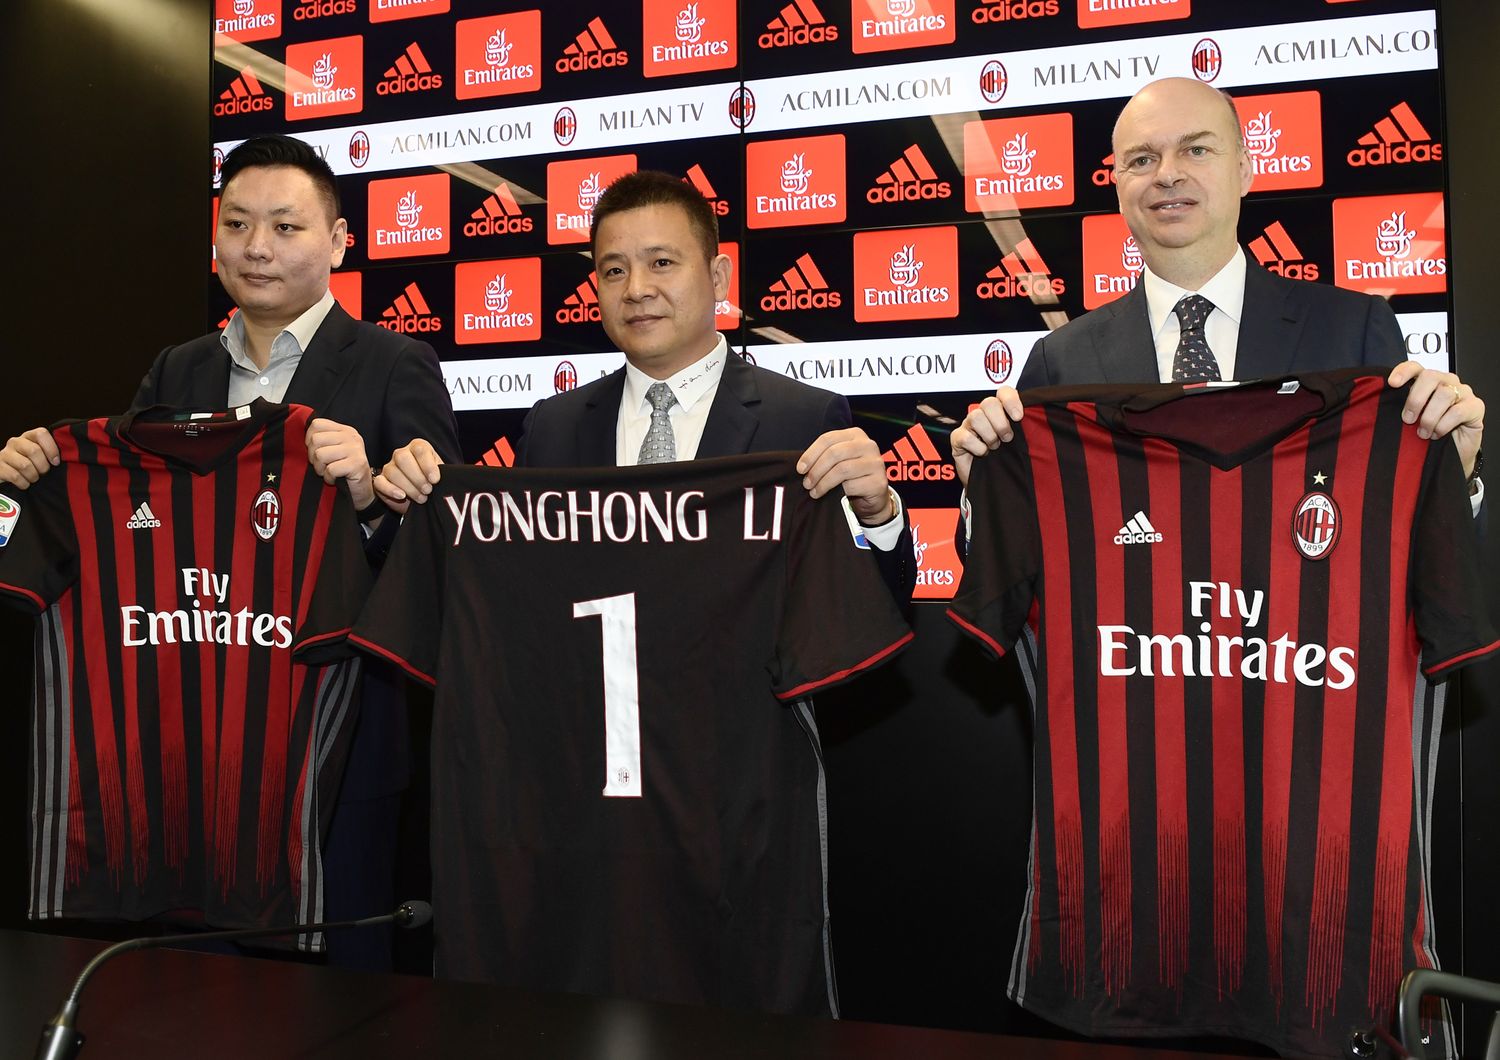 &nbsp;Yonghong Li mostra la maglia n. 1 col suo nome - Afp